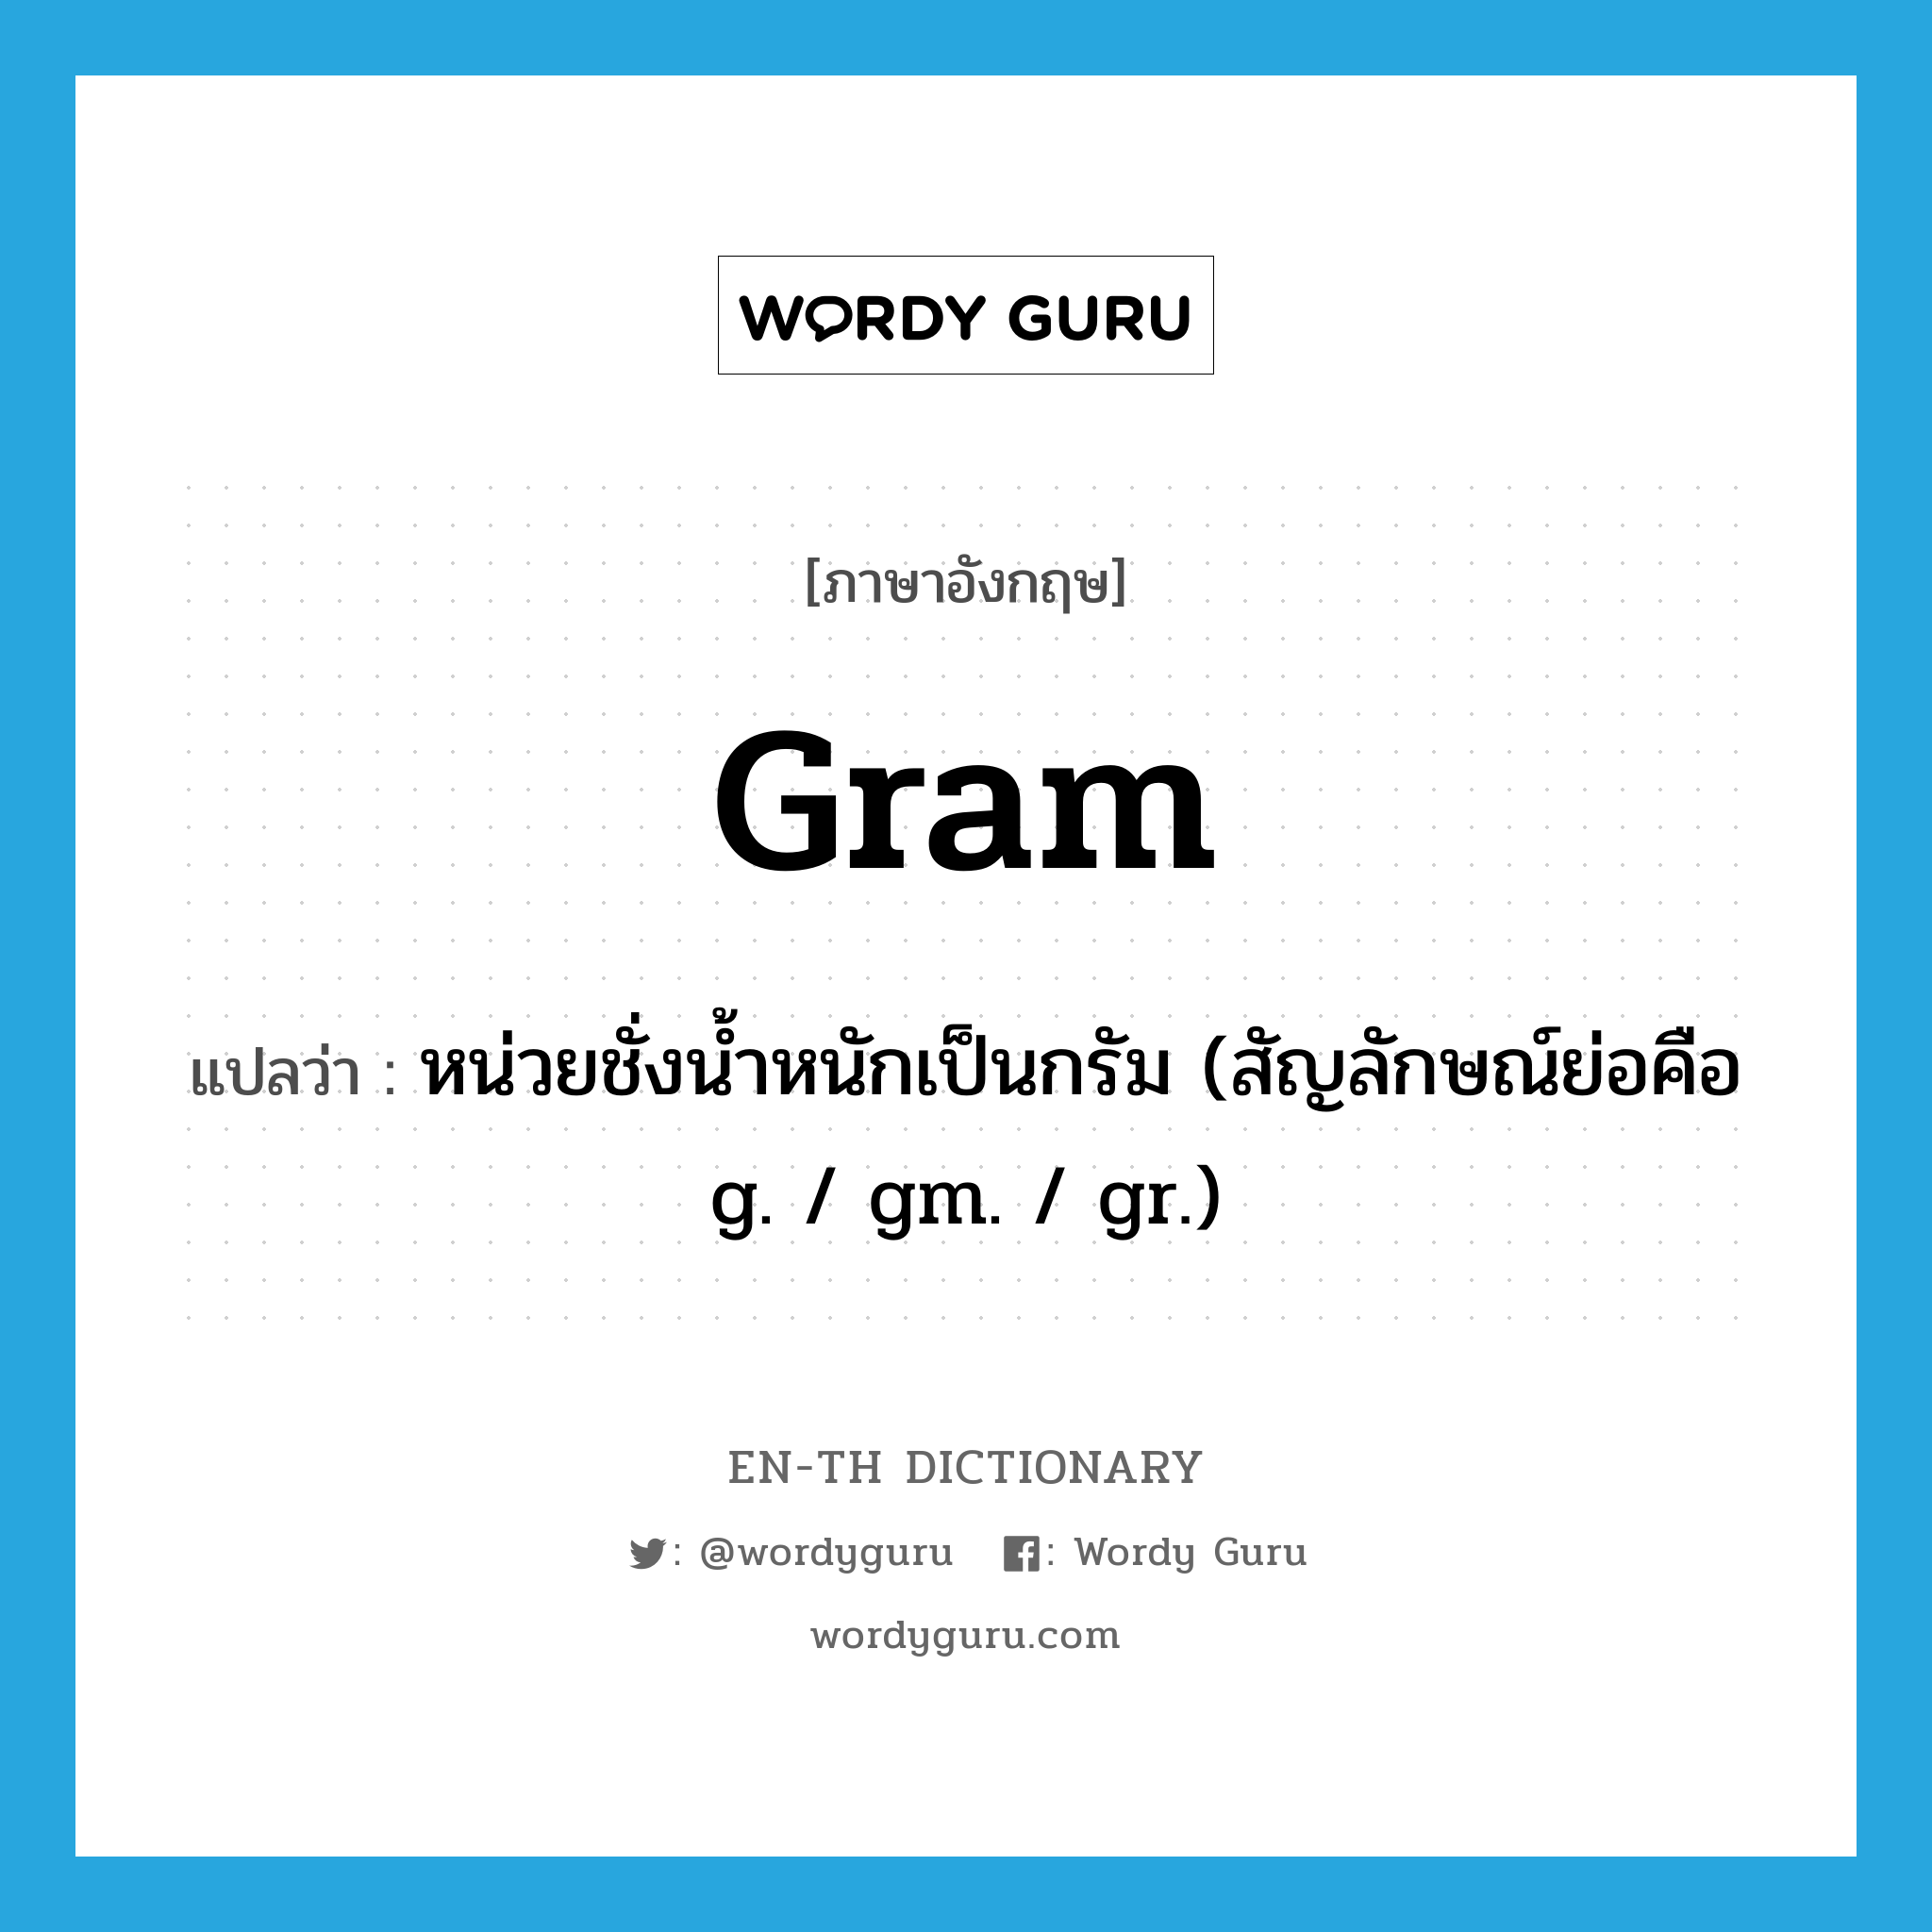 หน่วยชั่งน้ำหนักเป็นกรัม (สัญลักษณ์ย่อคือ g. / gm. / gr.) ภาษาอังกฤษ?, คำศัพท์ภาษาอังกฤษ หน่วยชั่งน้ำหนักเป็นกรัม (สัญลักษณ์ย่อคือ g. / gm. / gr.) แปลว่า gram ประเภท N หมวด N